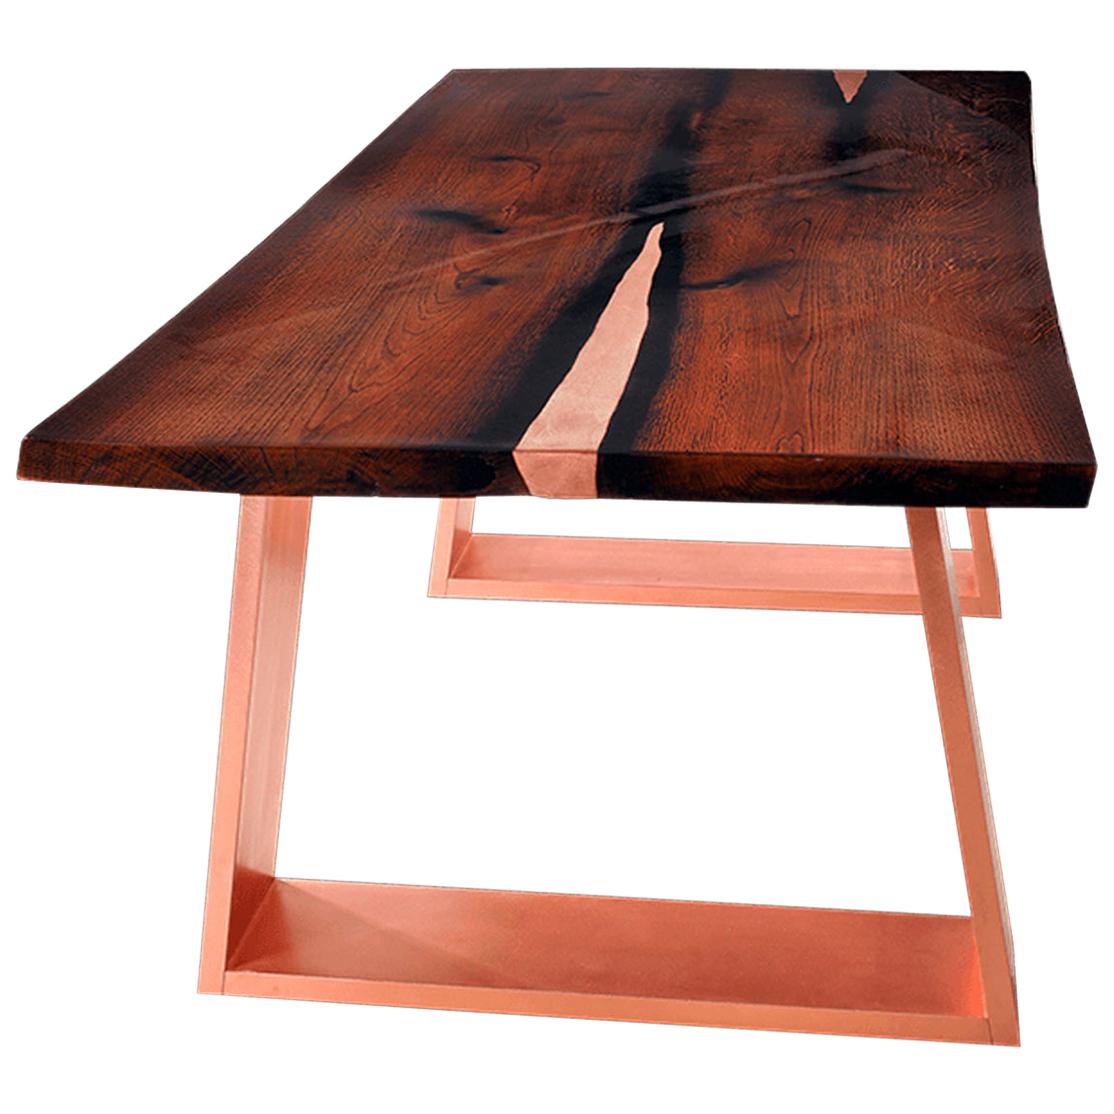 Table de salle à manger moderne classique en bois de chêne à bord vif et cuivre, finition laquée